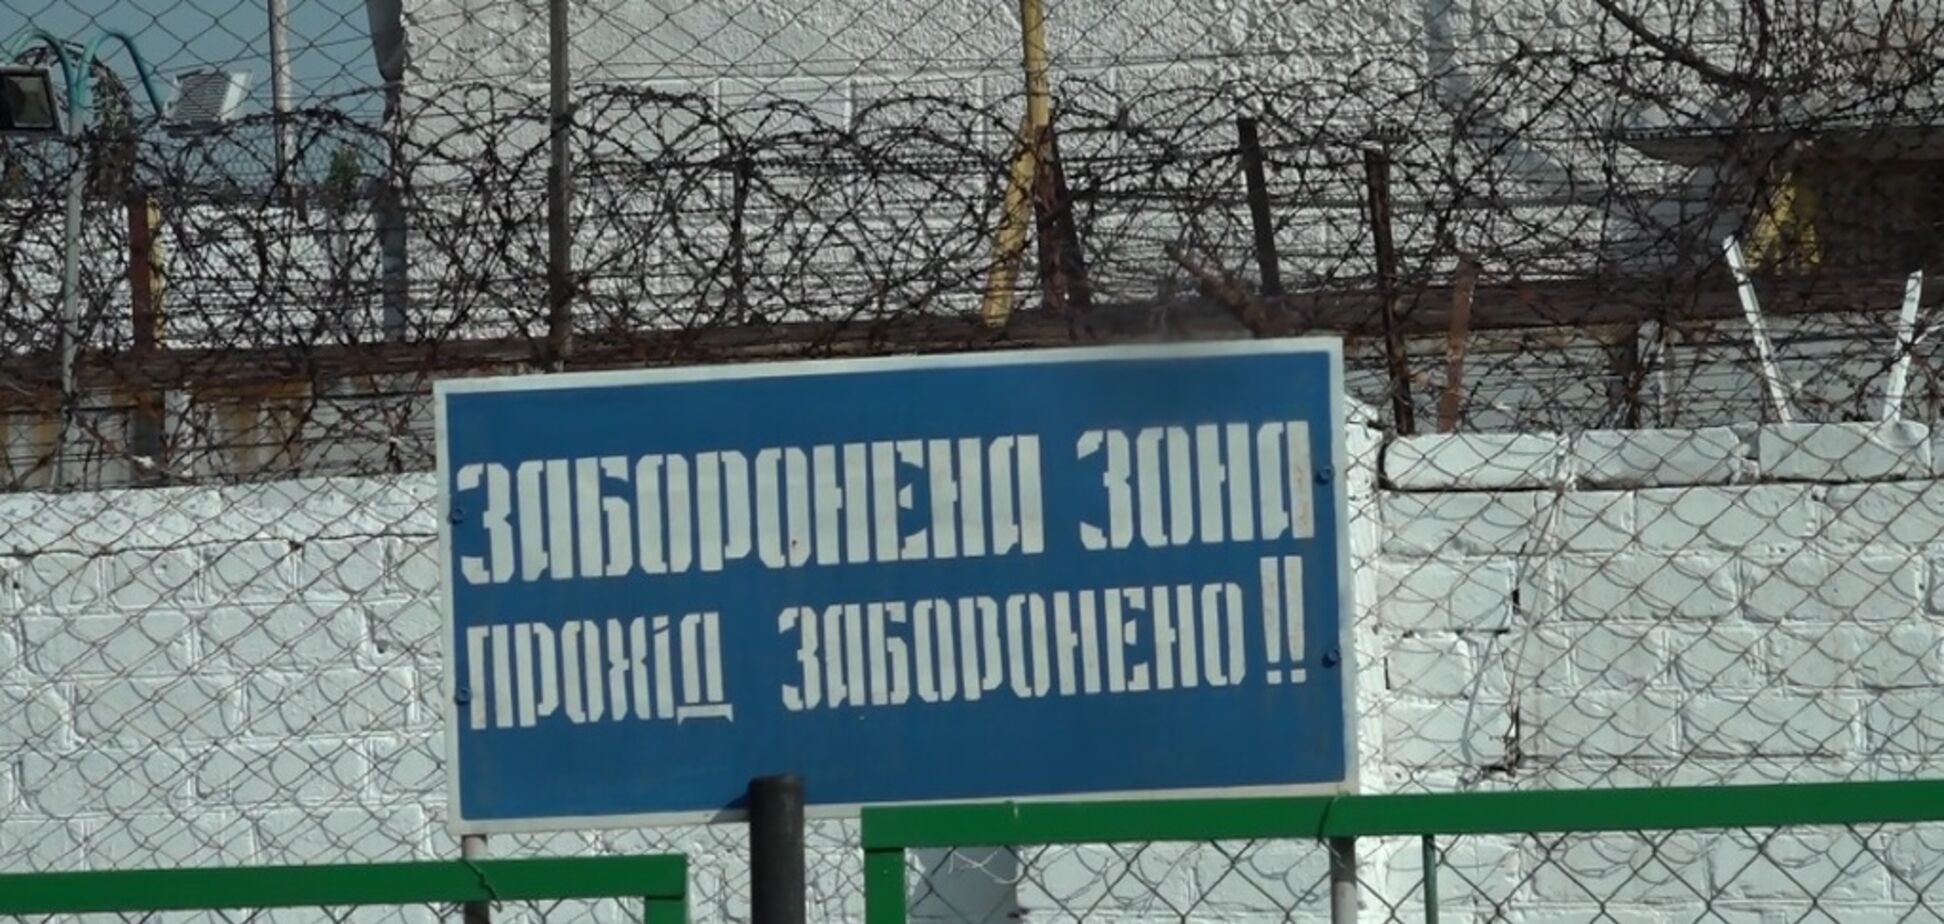 20 ходок и зарплата 800 грн: как живут опасные заключенные под Днепром